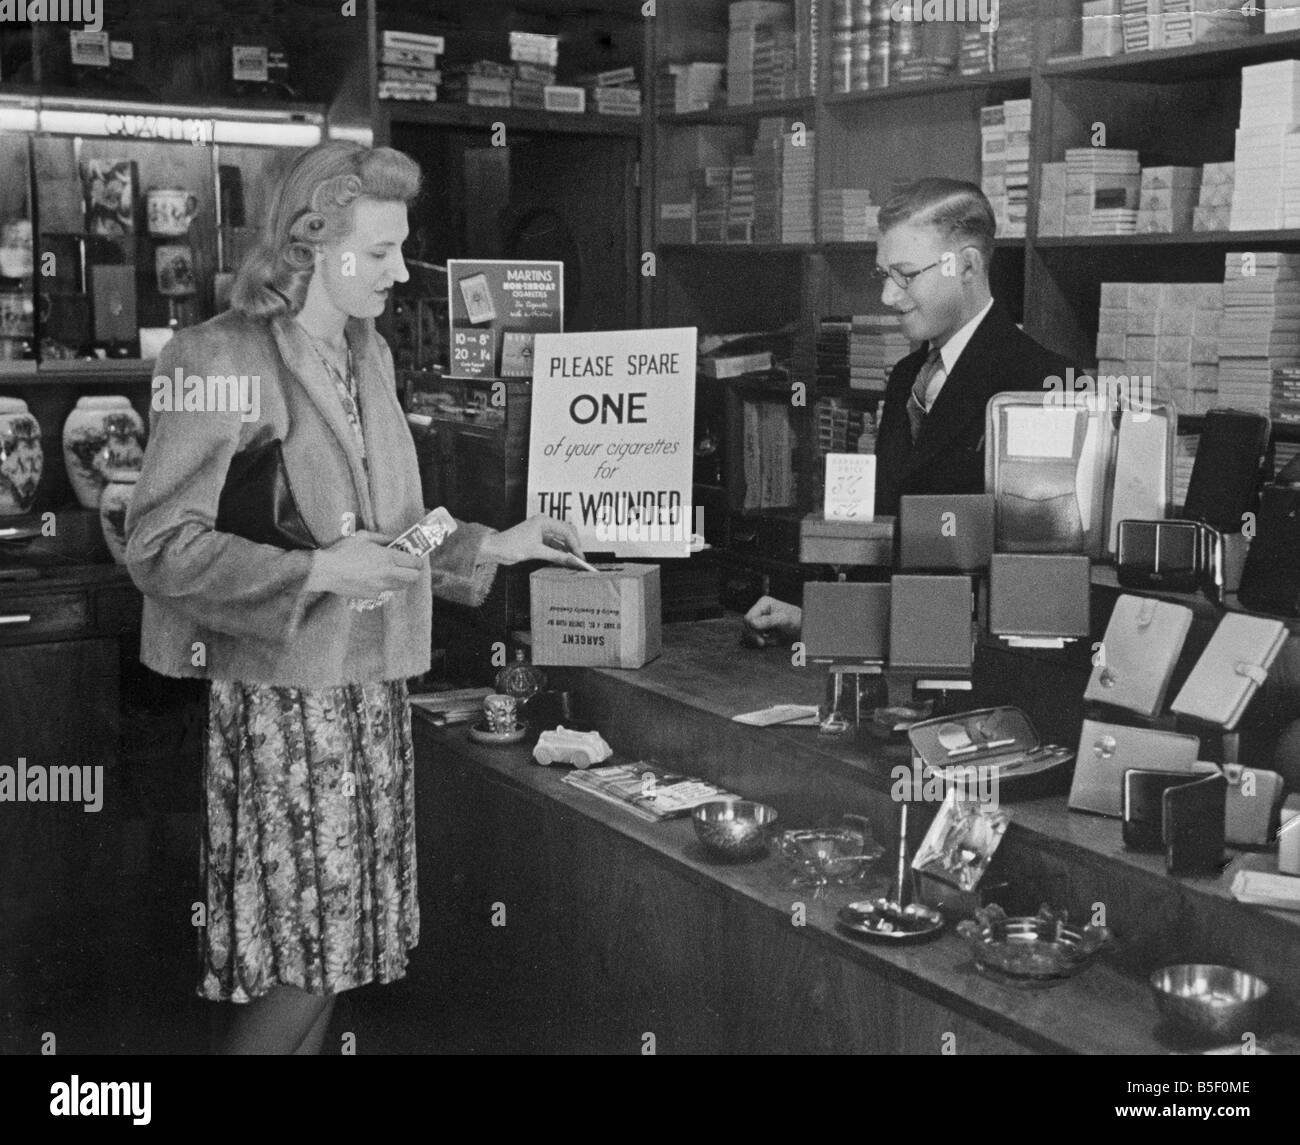 Une femme d'acheter un paquet de cigarettes dans un bureau de tabac shopin Londres, laisse une ampoule de rechange dans une boîte de collecte de cigarettes, qui sera envoyé à un hôpital pour les soldats blessés pendant la Seconde guerre mondiale ;Juin 1940 Banque D'Images